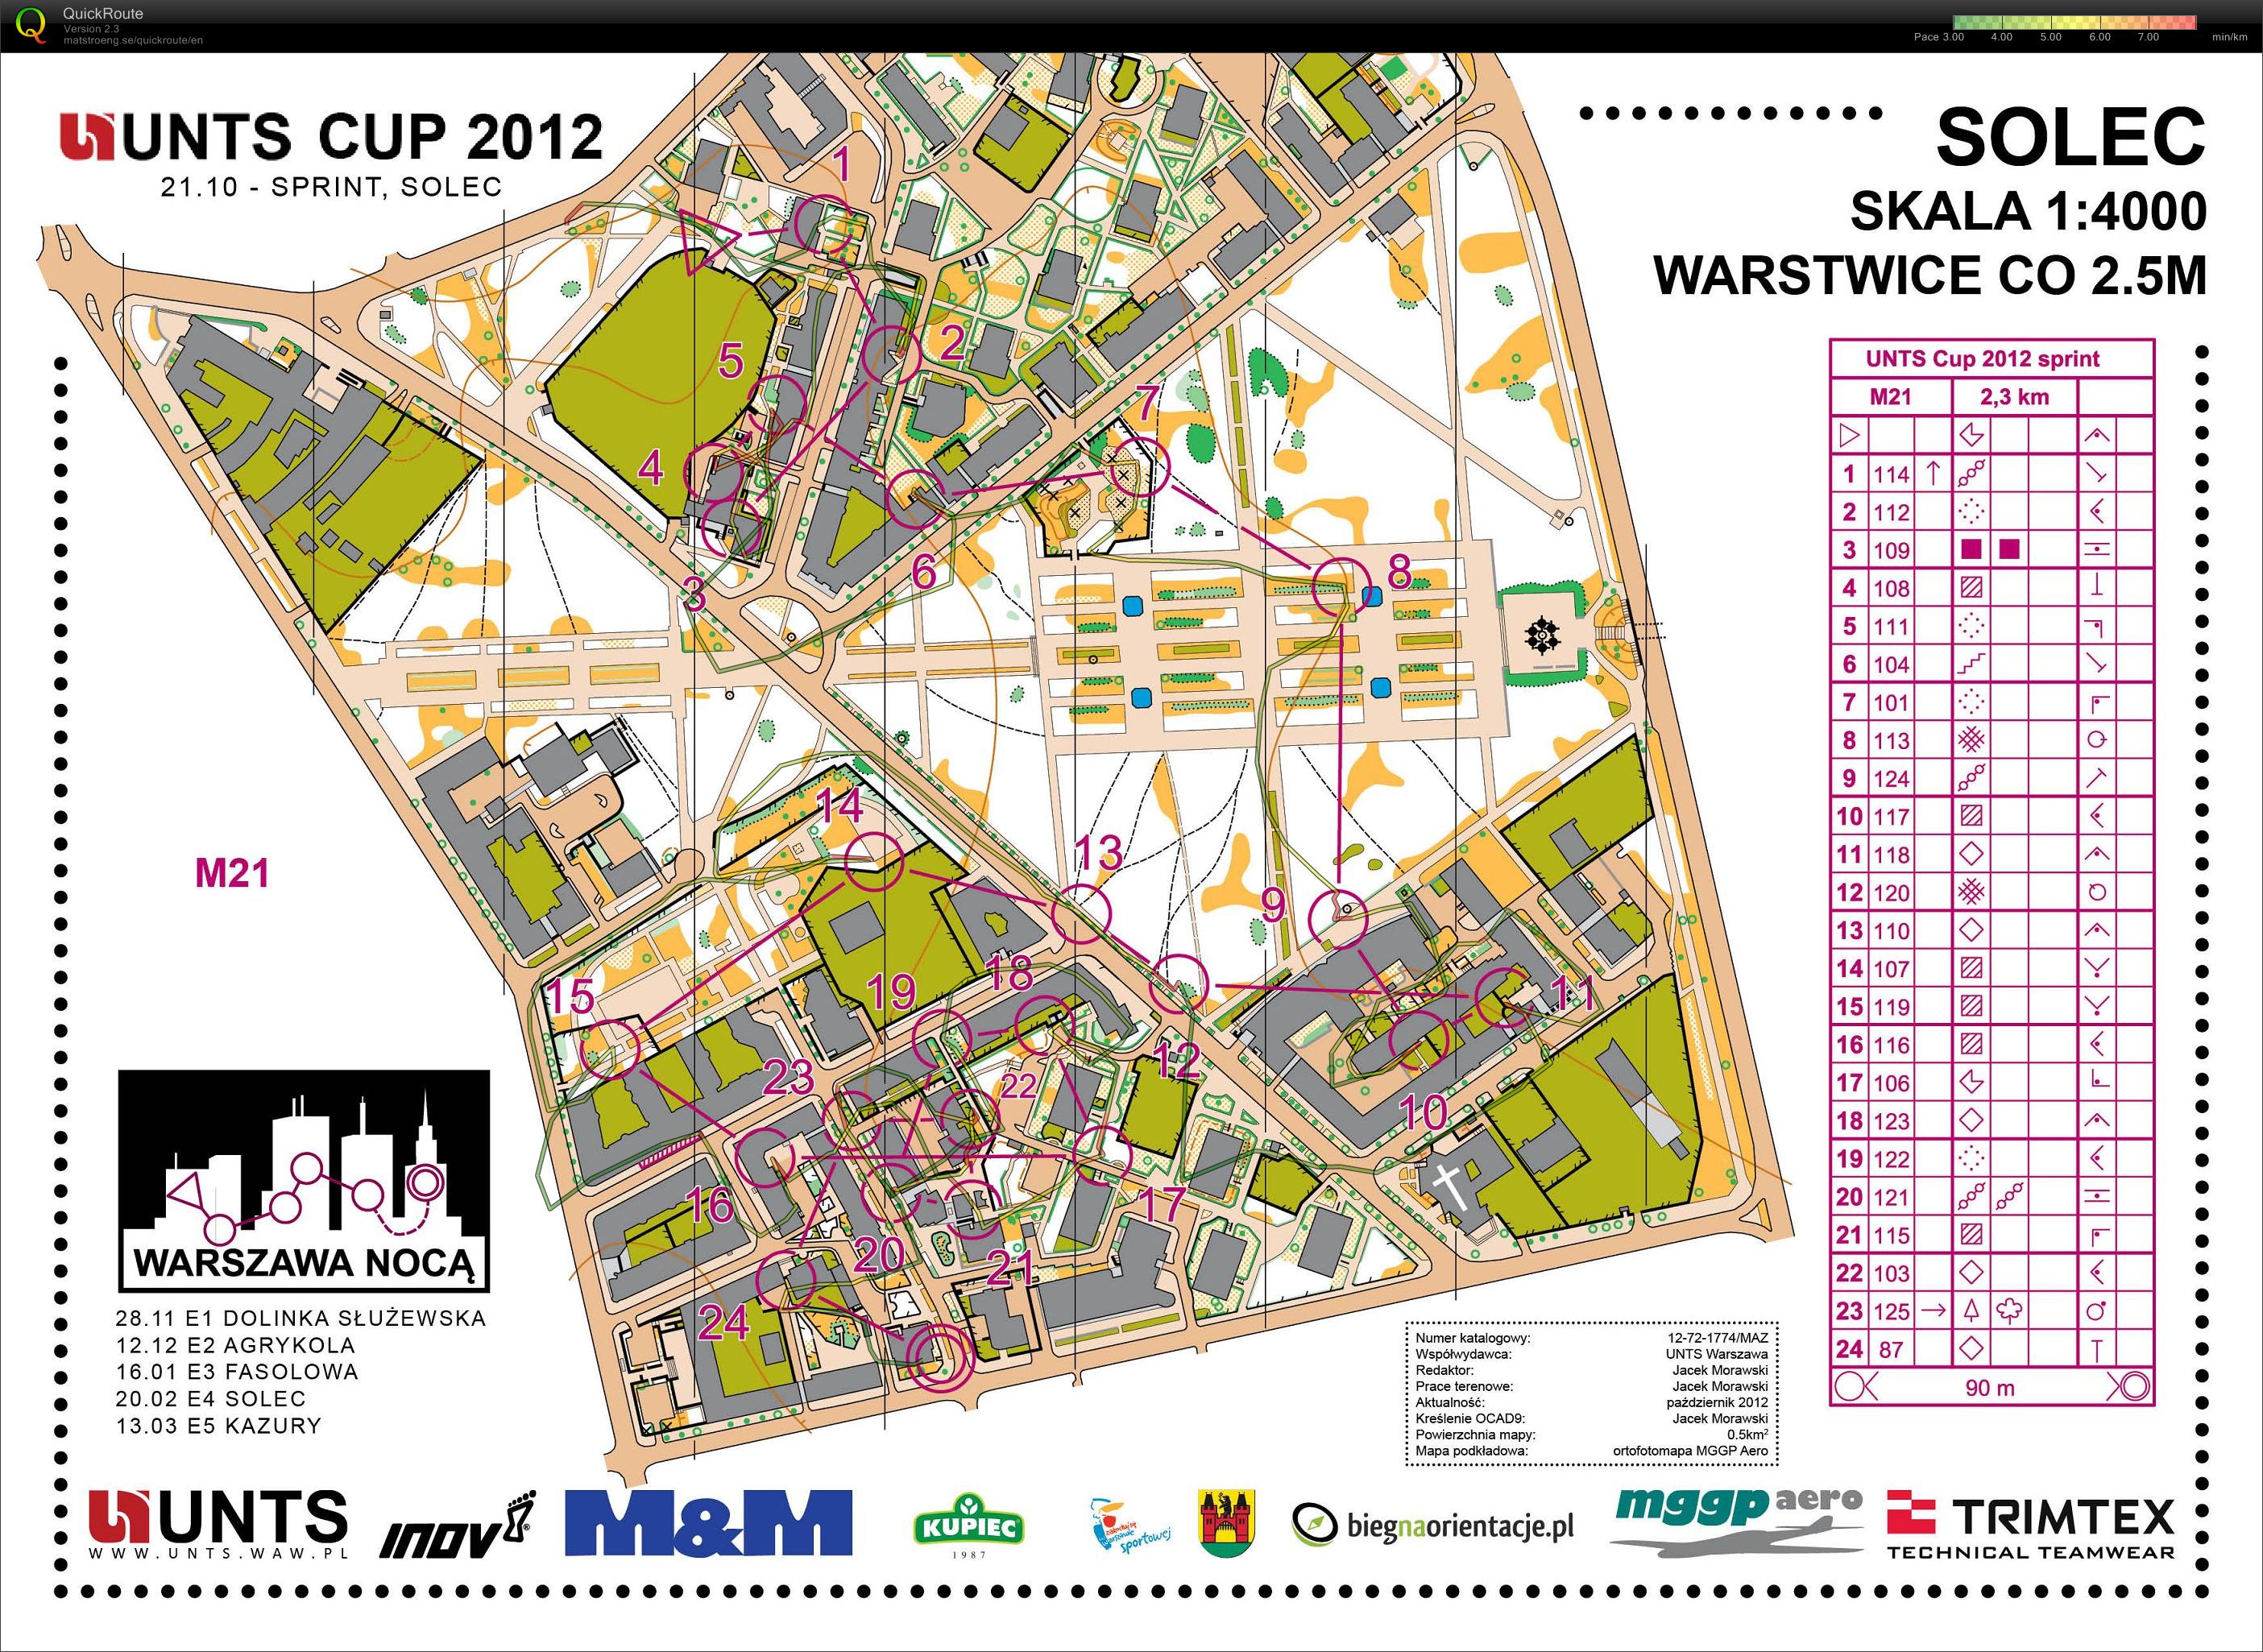 Z157 - Mistrzostwa Warszawy - sprint (21/10/2012)